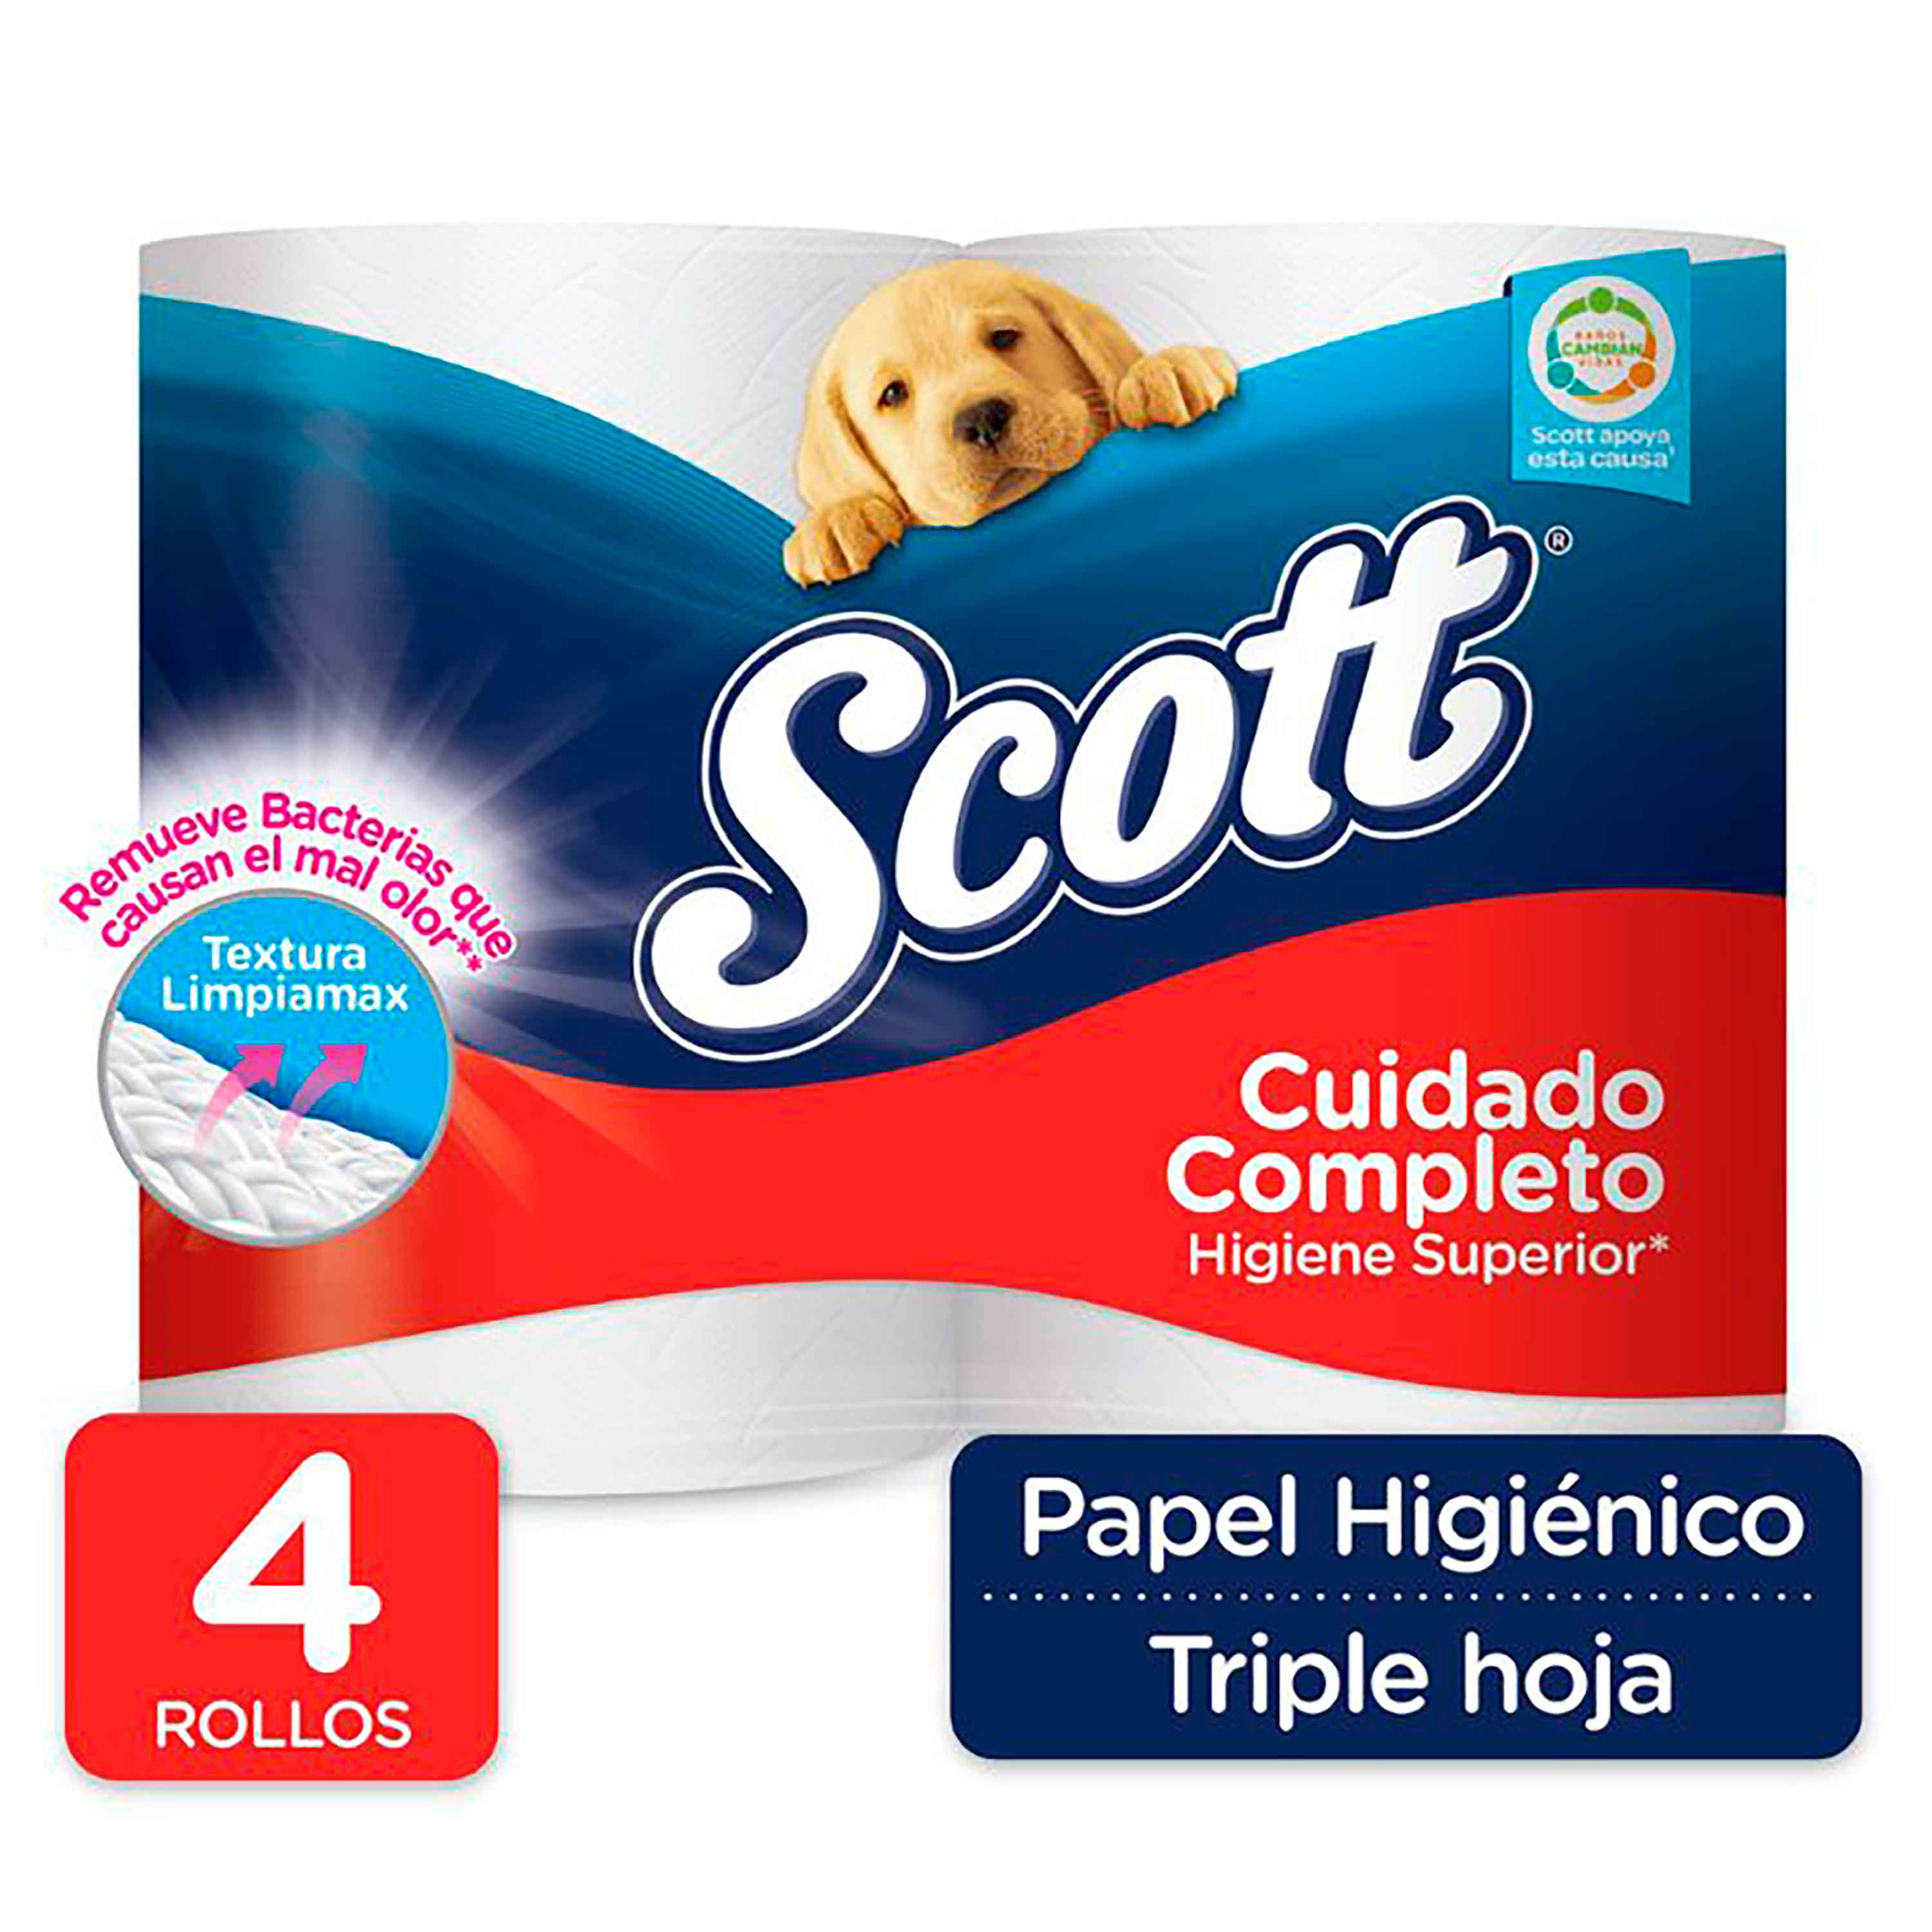 Papel higiénico: 63 rollos de Scottex Acolchado por sólo 24,49€.